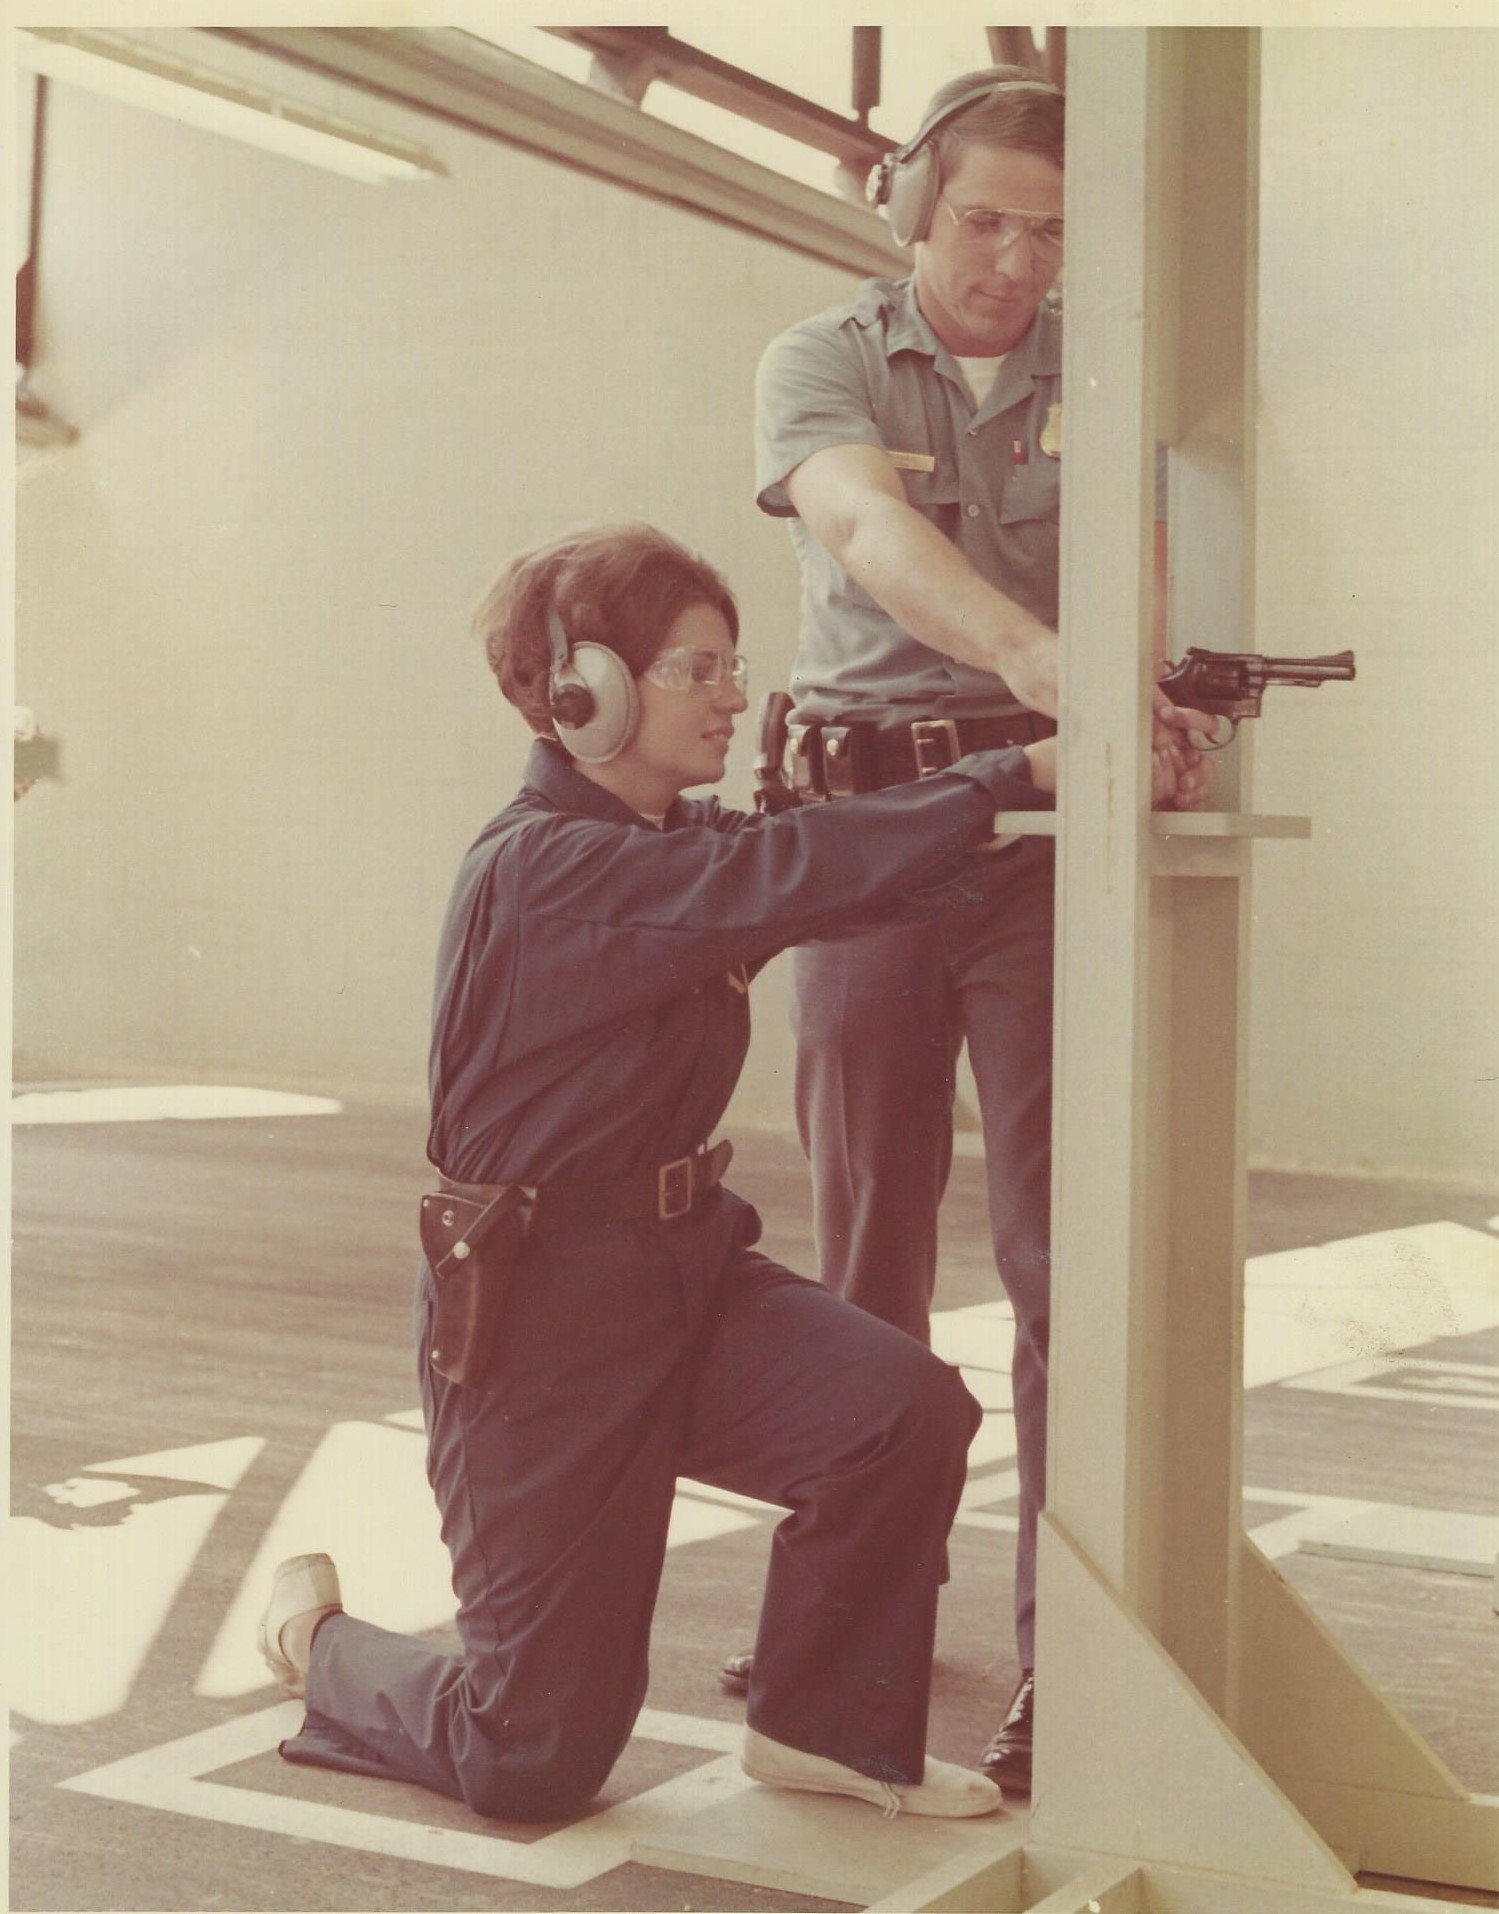 Jo Ann Kocher participating in firearms training